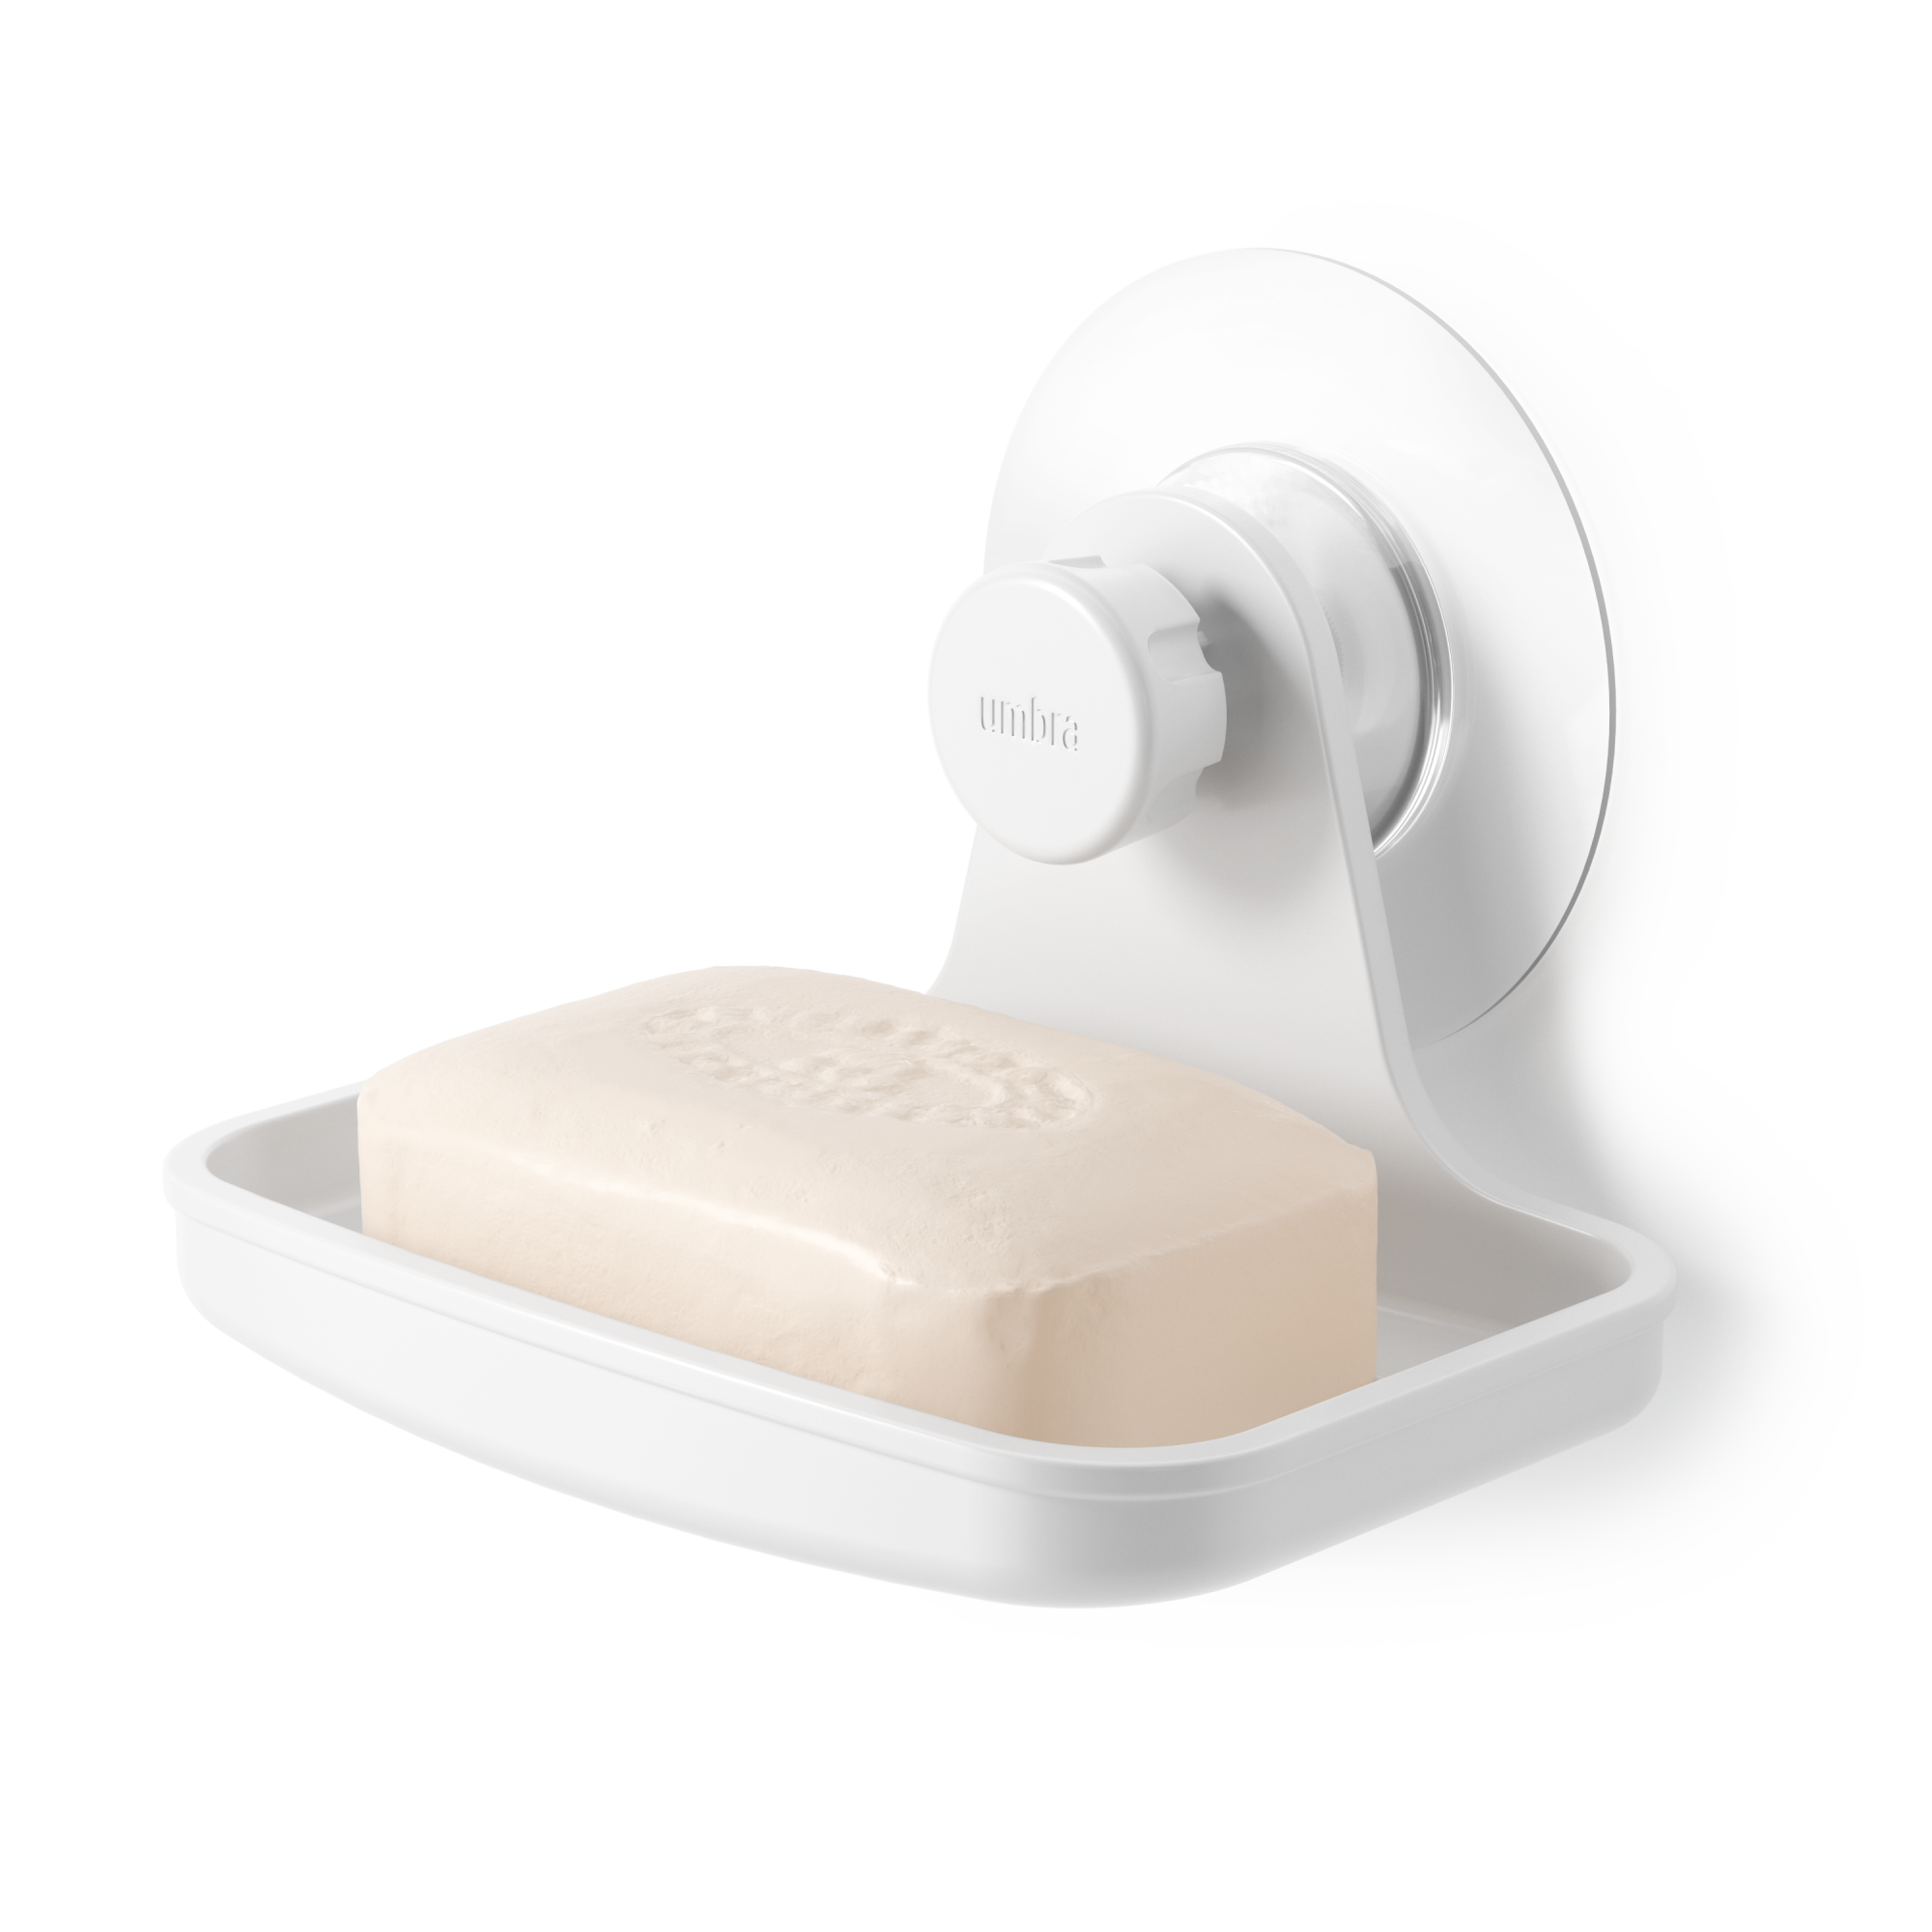 Umbra Flex Adhesive Soap Dish